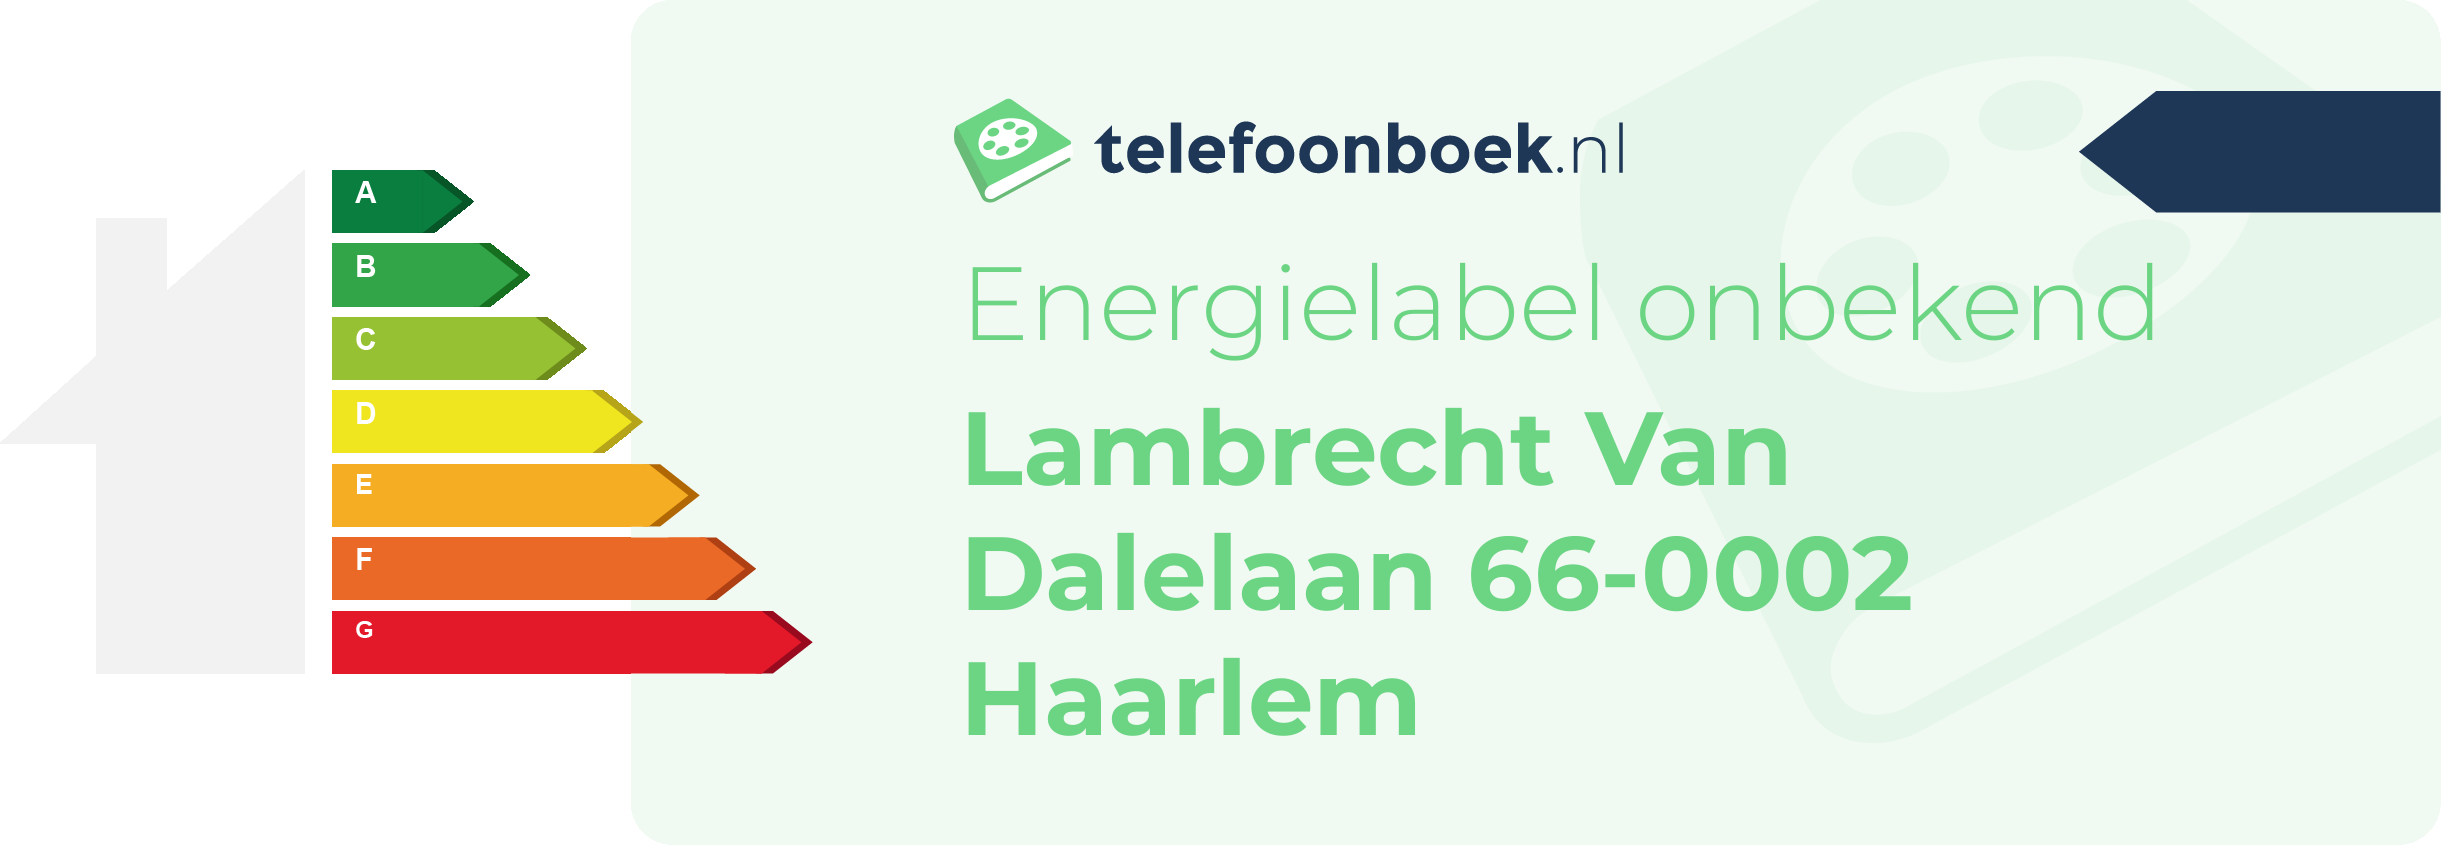 Energielabel Lambrecht Van Dalelaan 66-0002 Haarlem